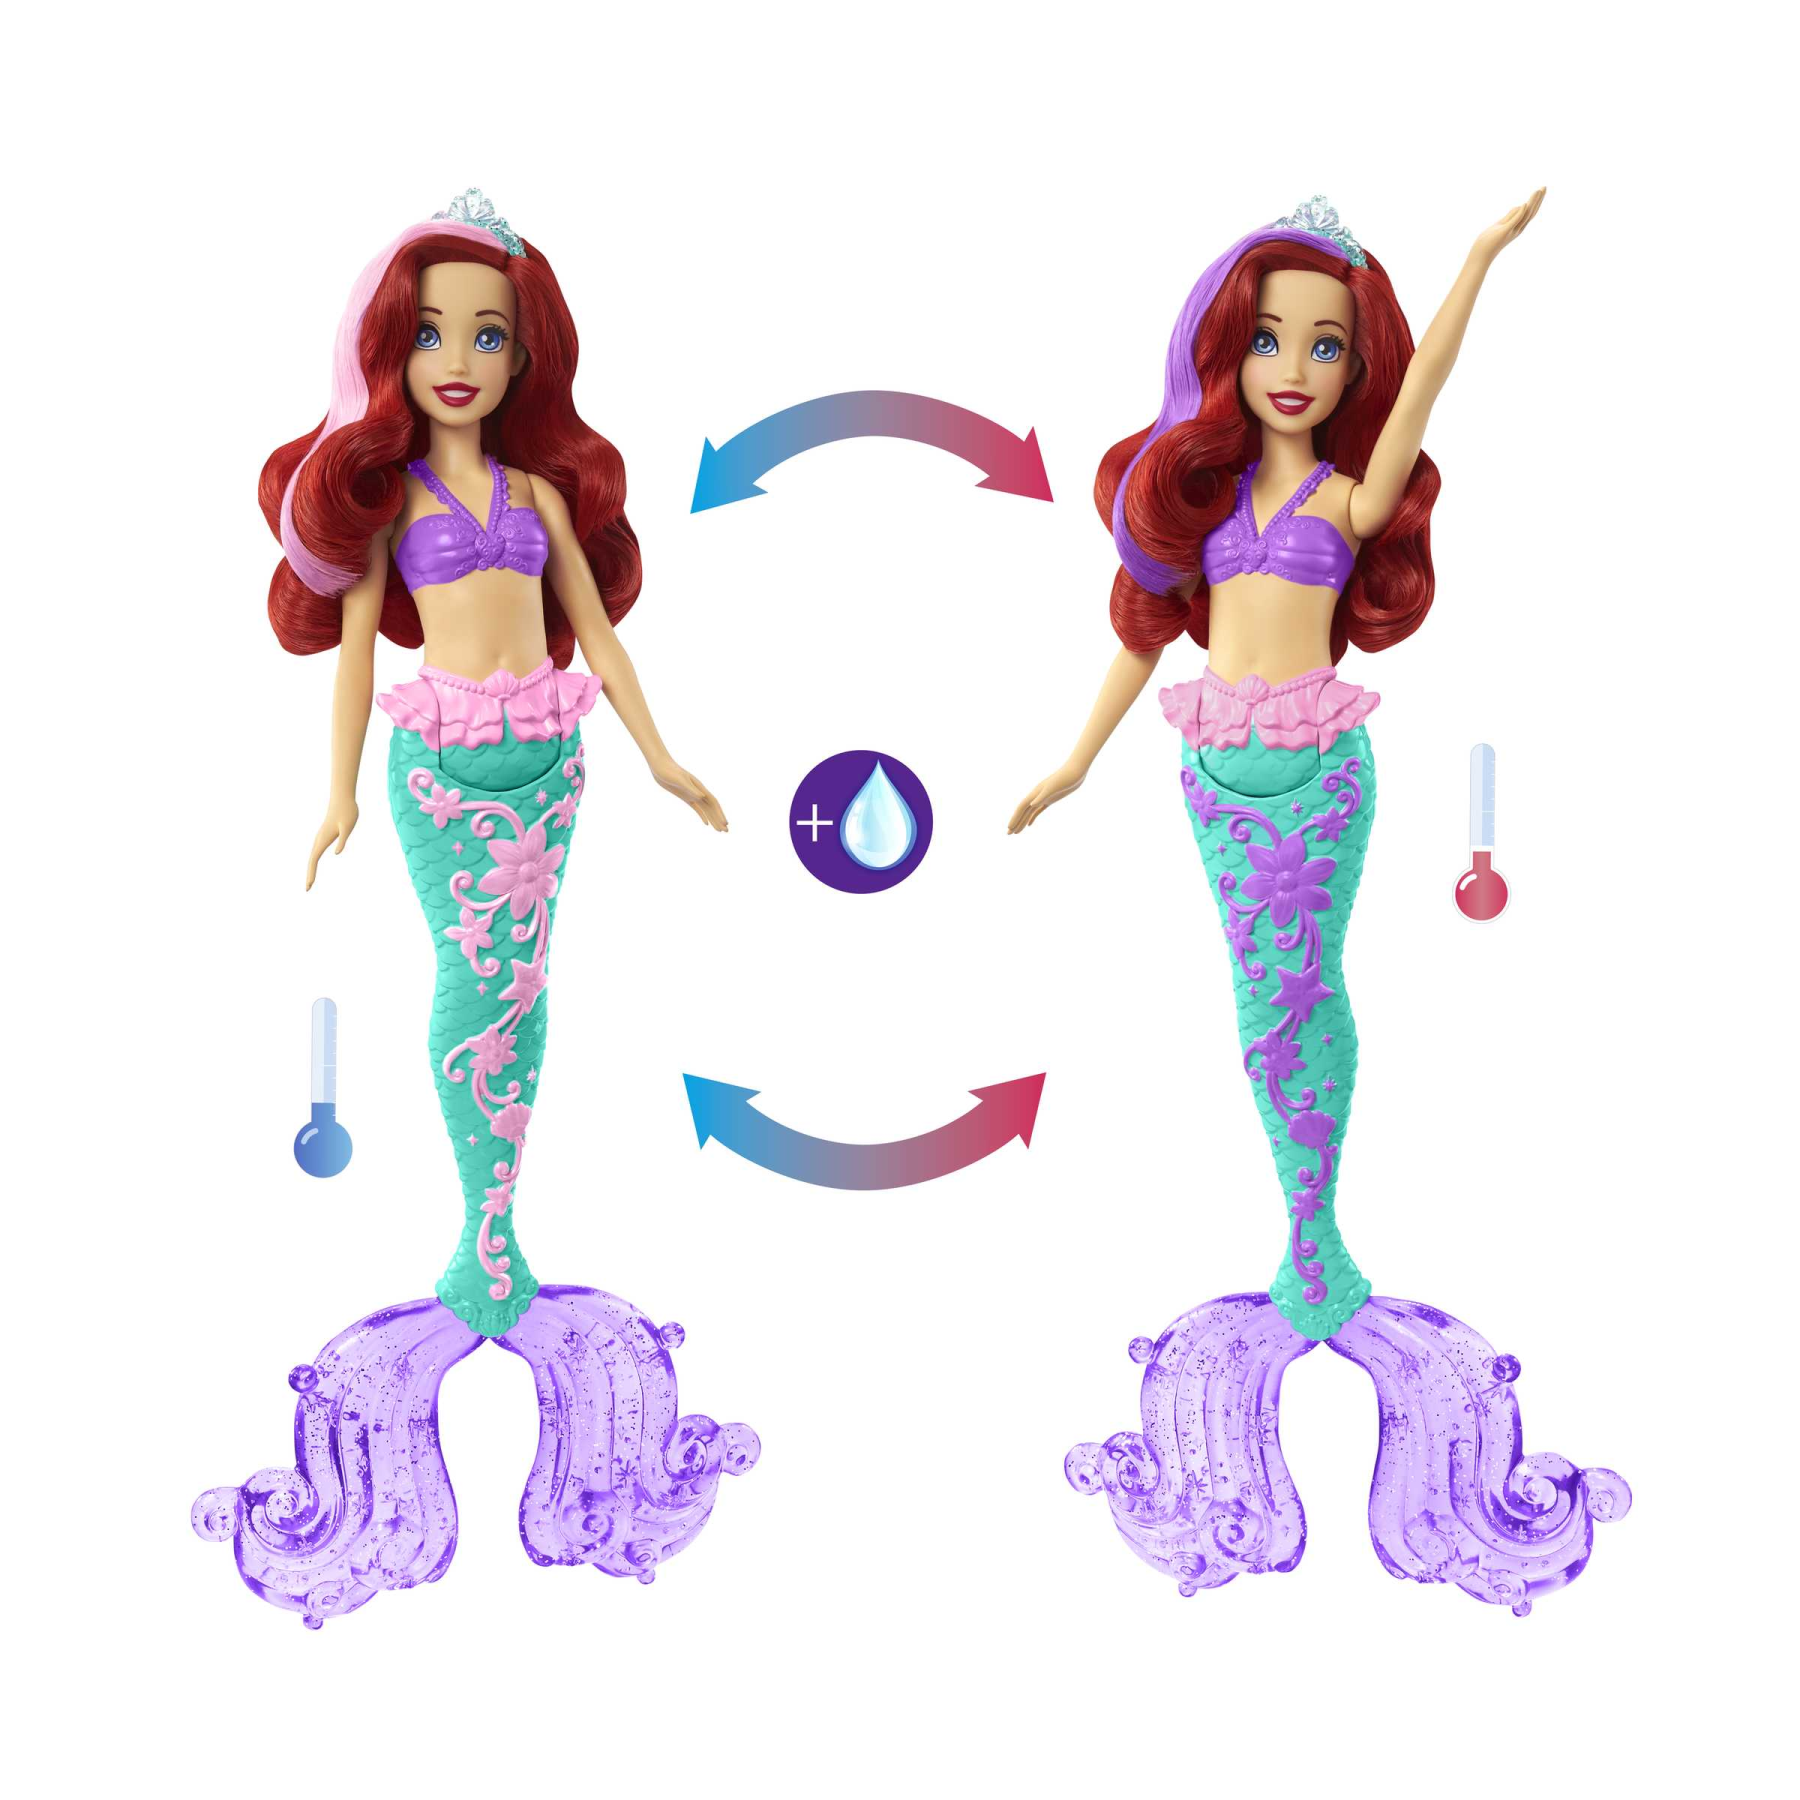 Disney princess - ariel cambia colore, bambola sirenetta con capelli e coda cambia colore, giocattolo acquatico ispirato al film disney, giocattolo per bambini, 3+ anni, hlw00 - DISNEY PRINCESS